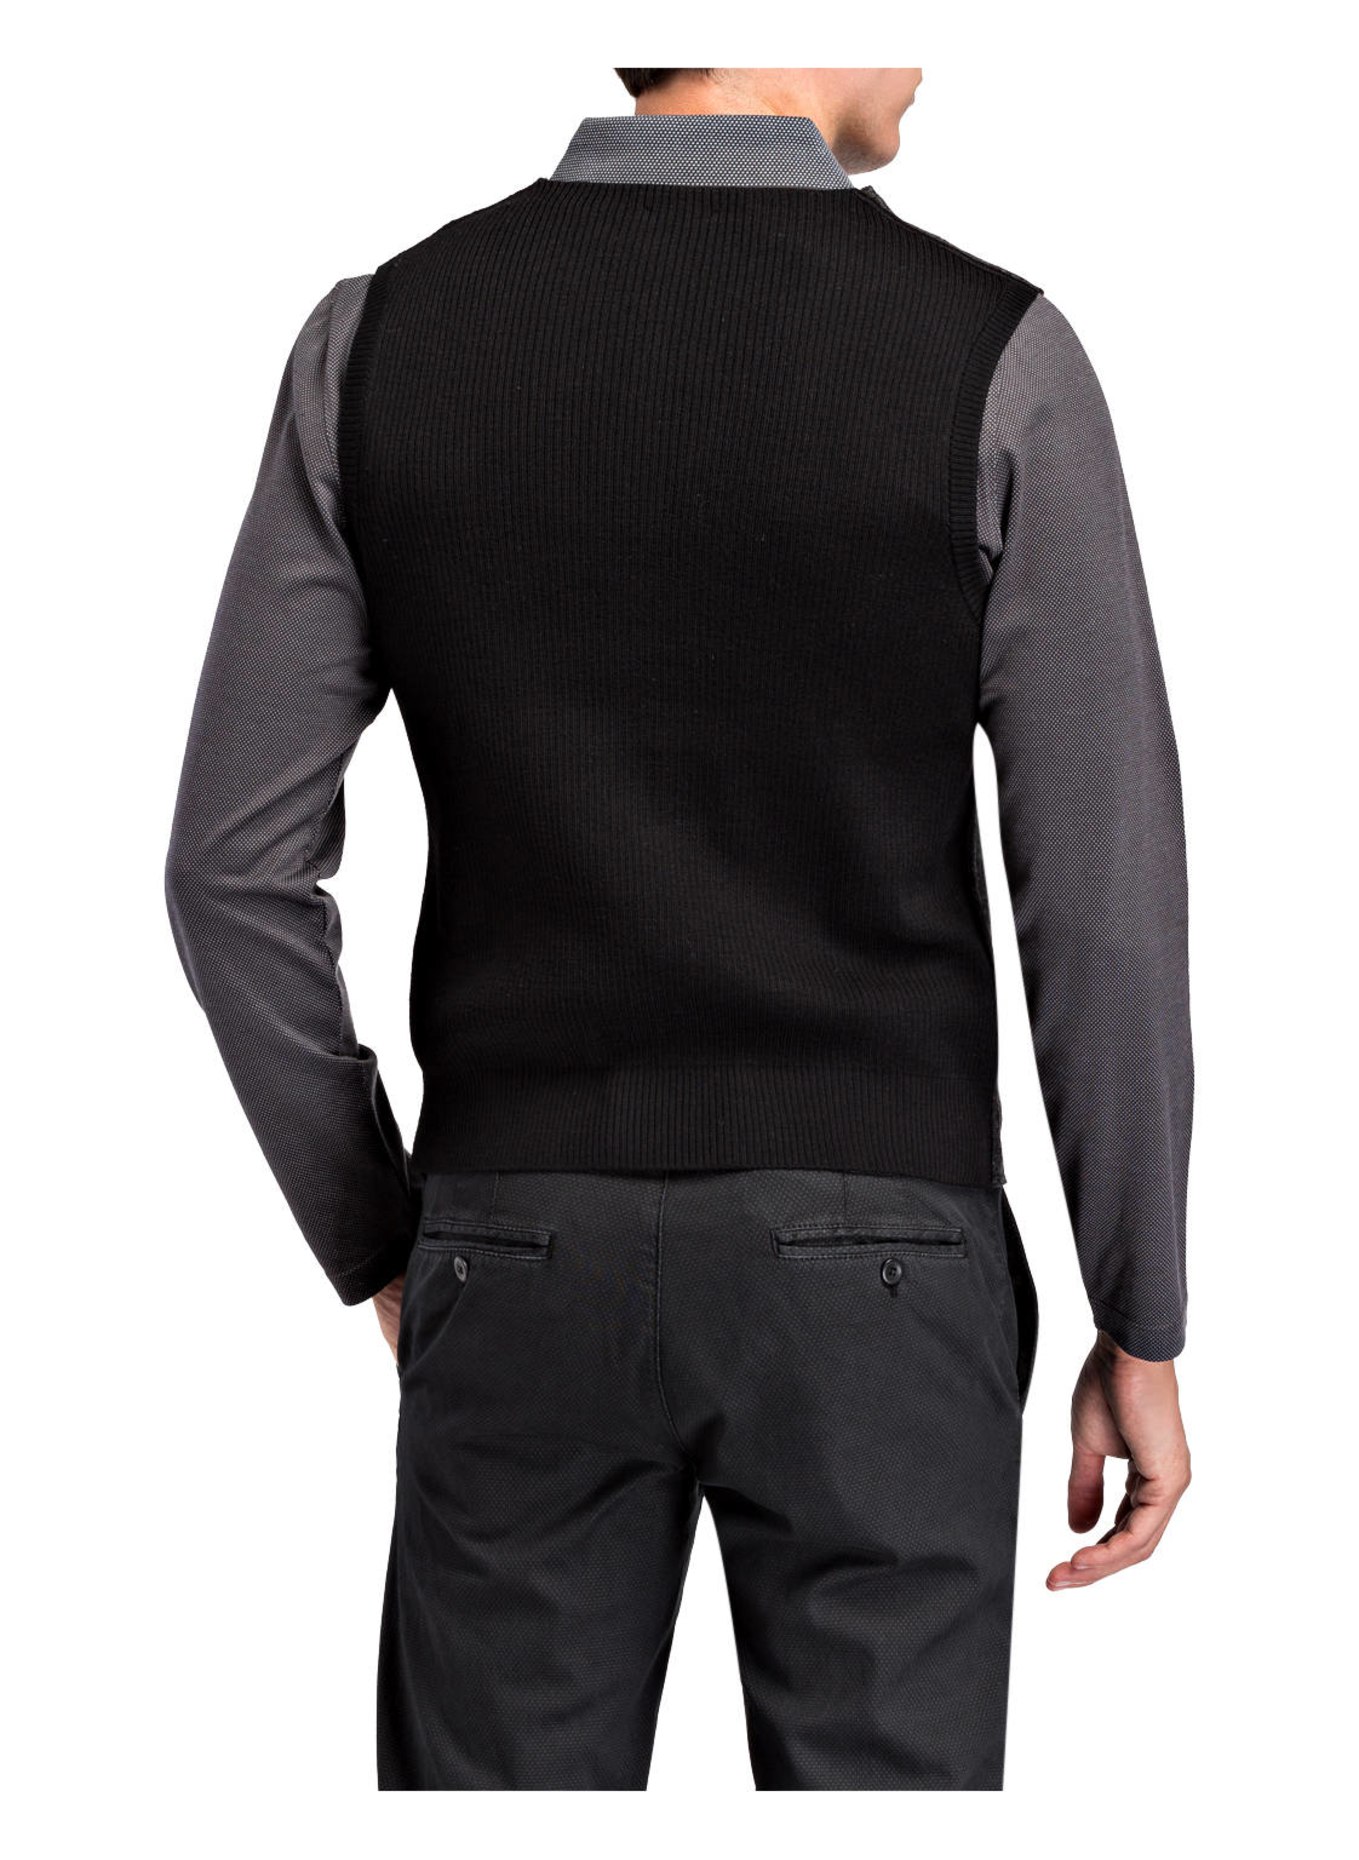 MAERZ MUENCHEN Suit vest, Color: DARK GRAY/ BLACK (Image 3)